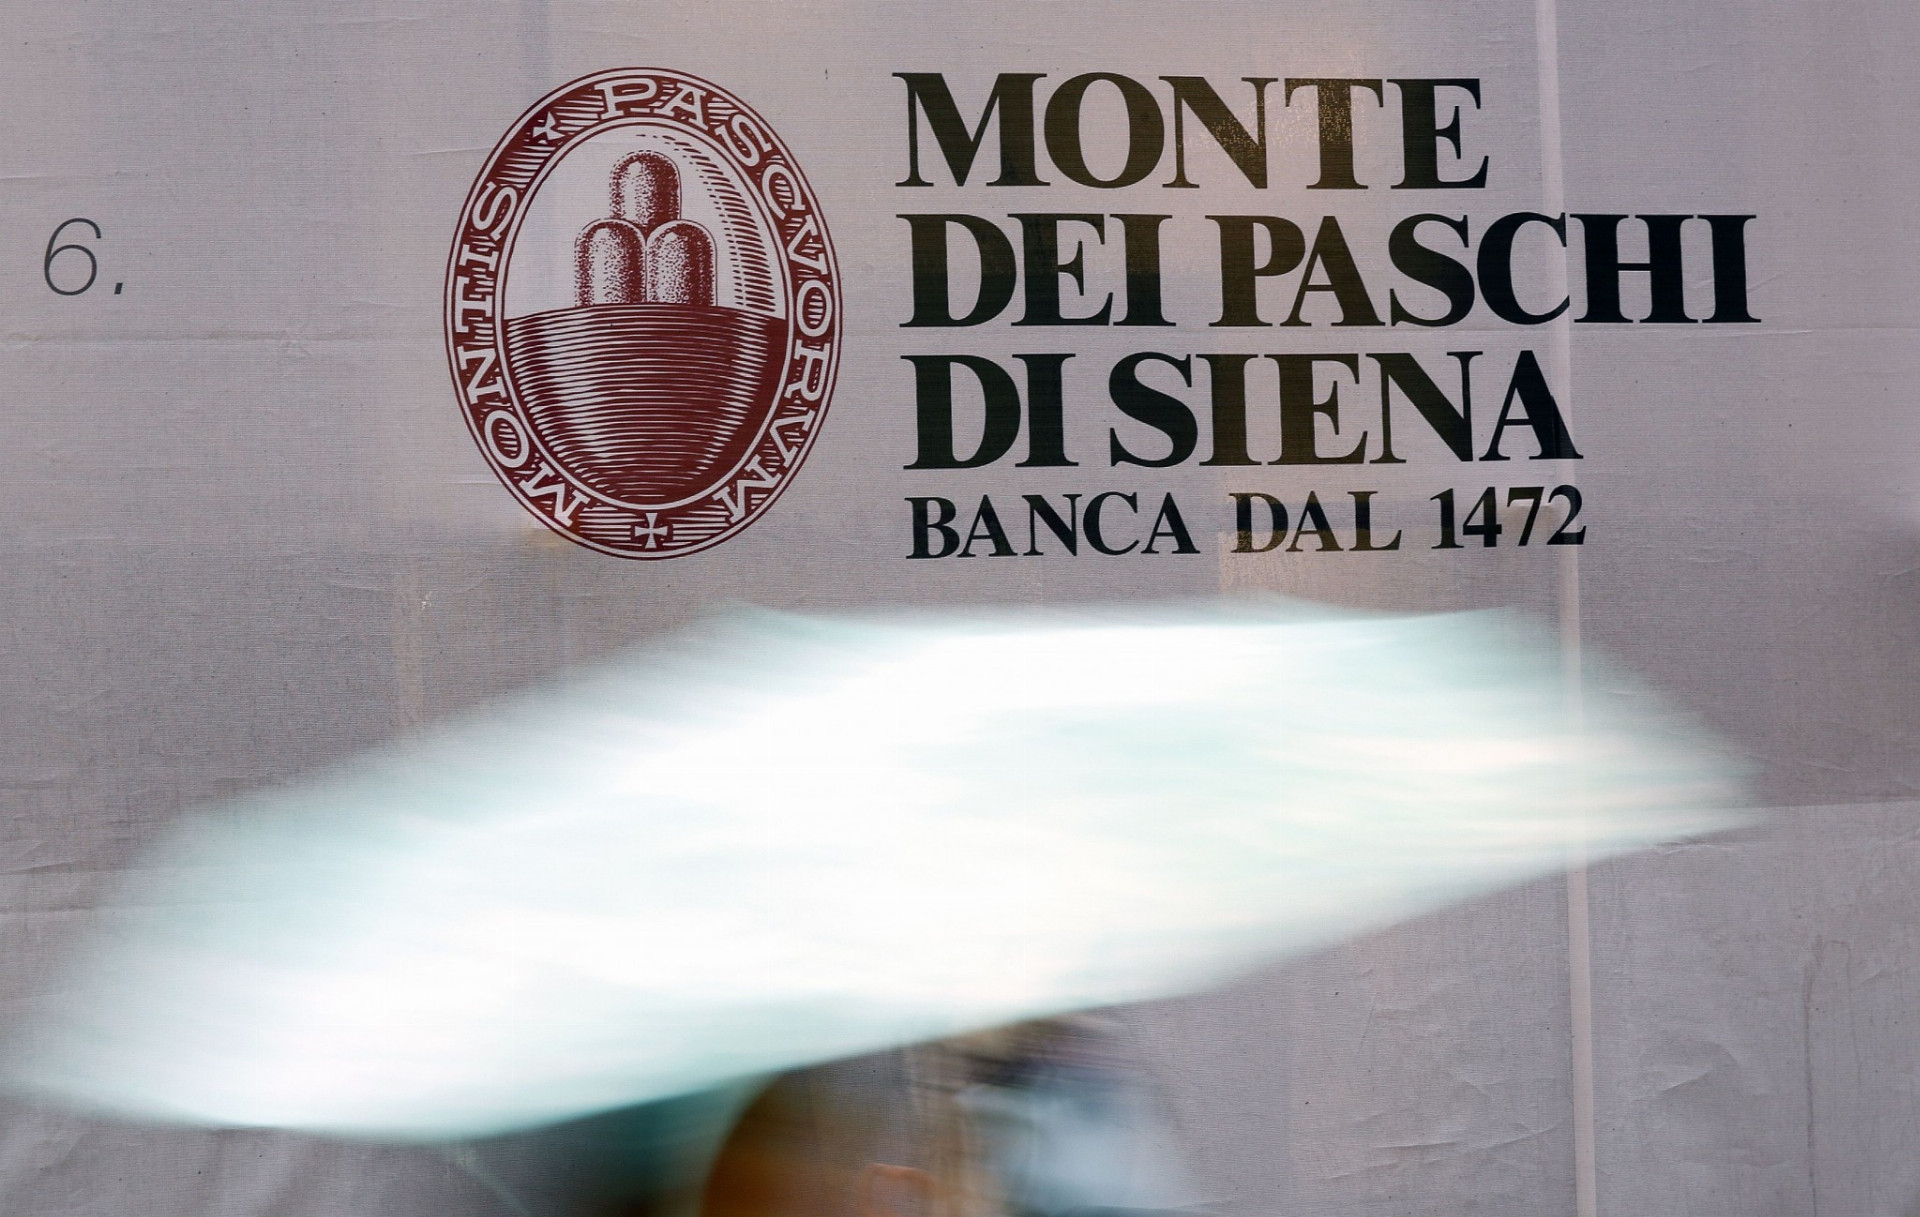 Banca Monte Dei Paschi di Siena